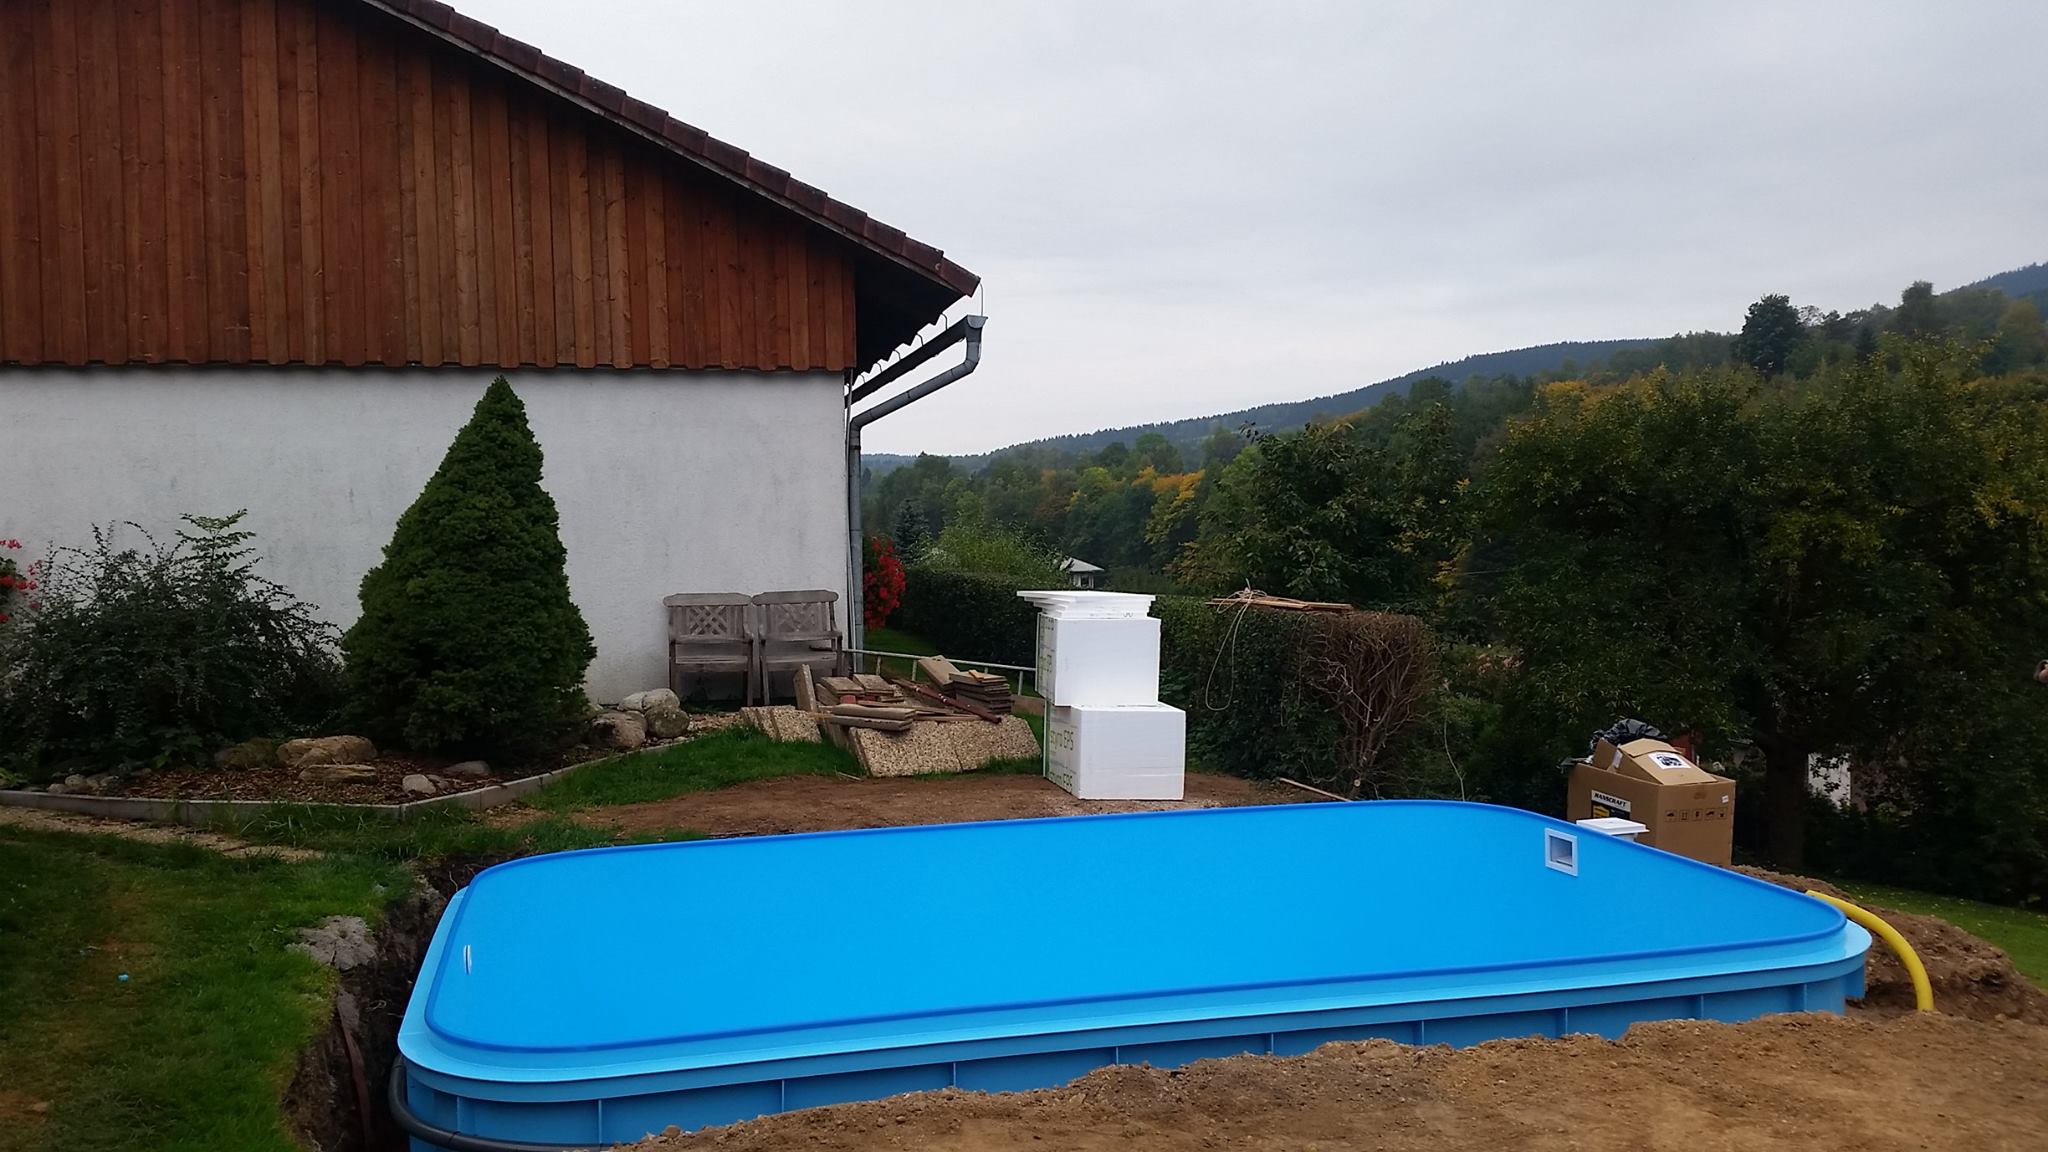 Obdélníkový plastový bazén - výroba plastových bazénů